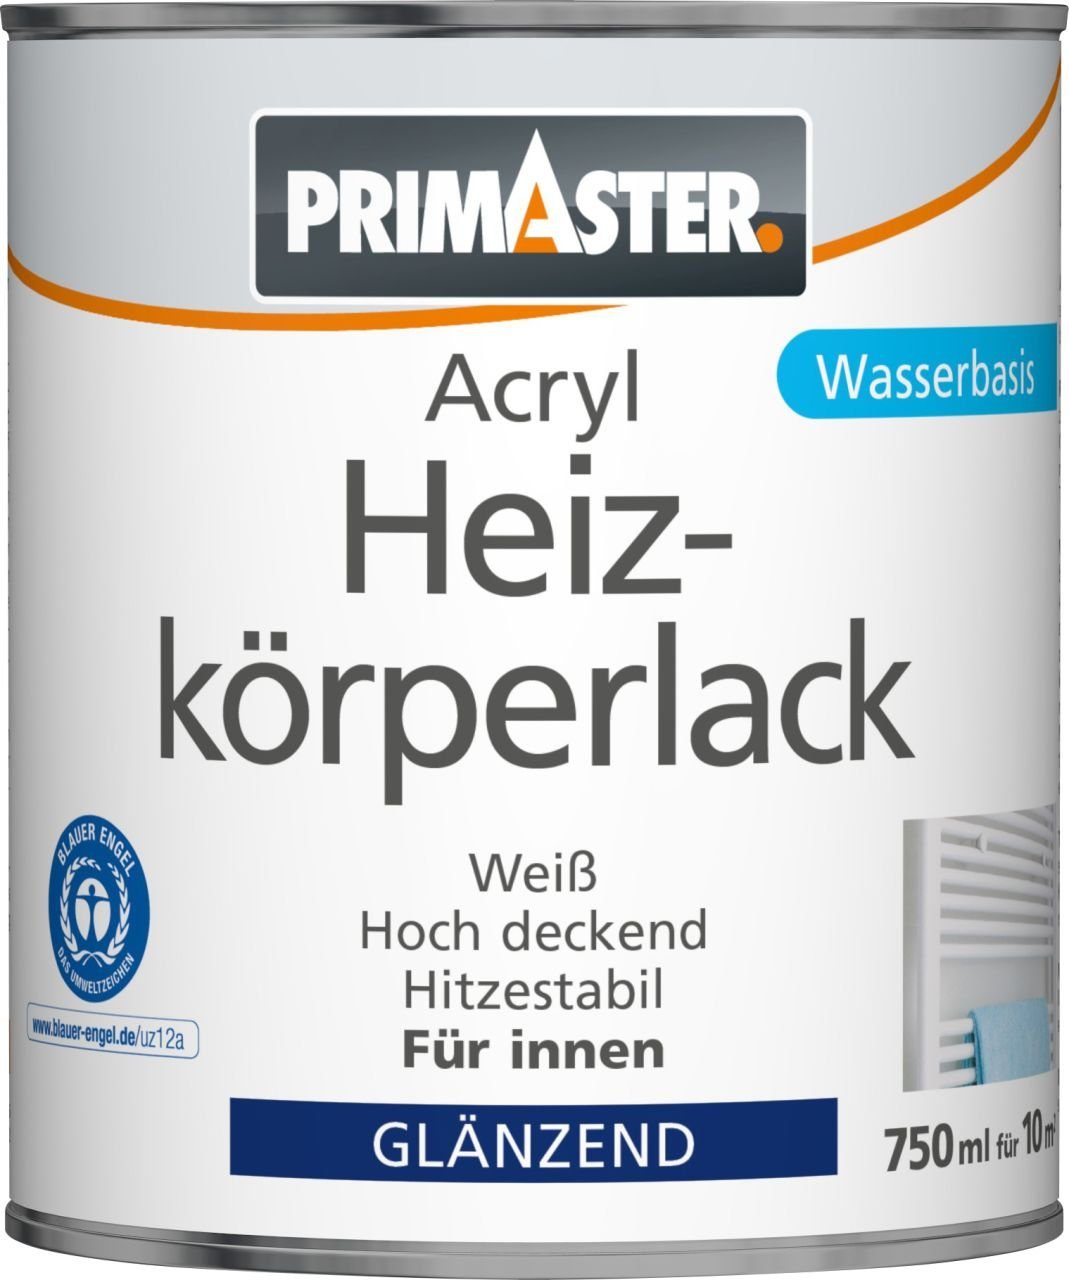 Primaster Heizkörperlack Primaster Acryl Heizkörperlack 750 ml weiß